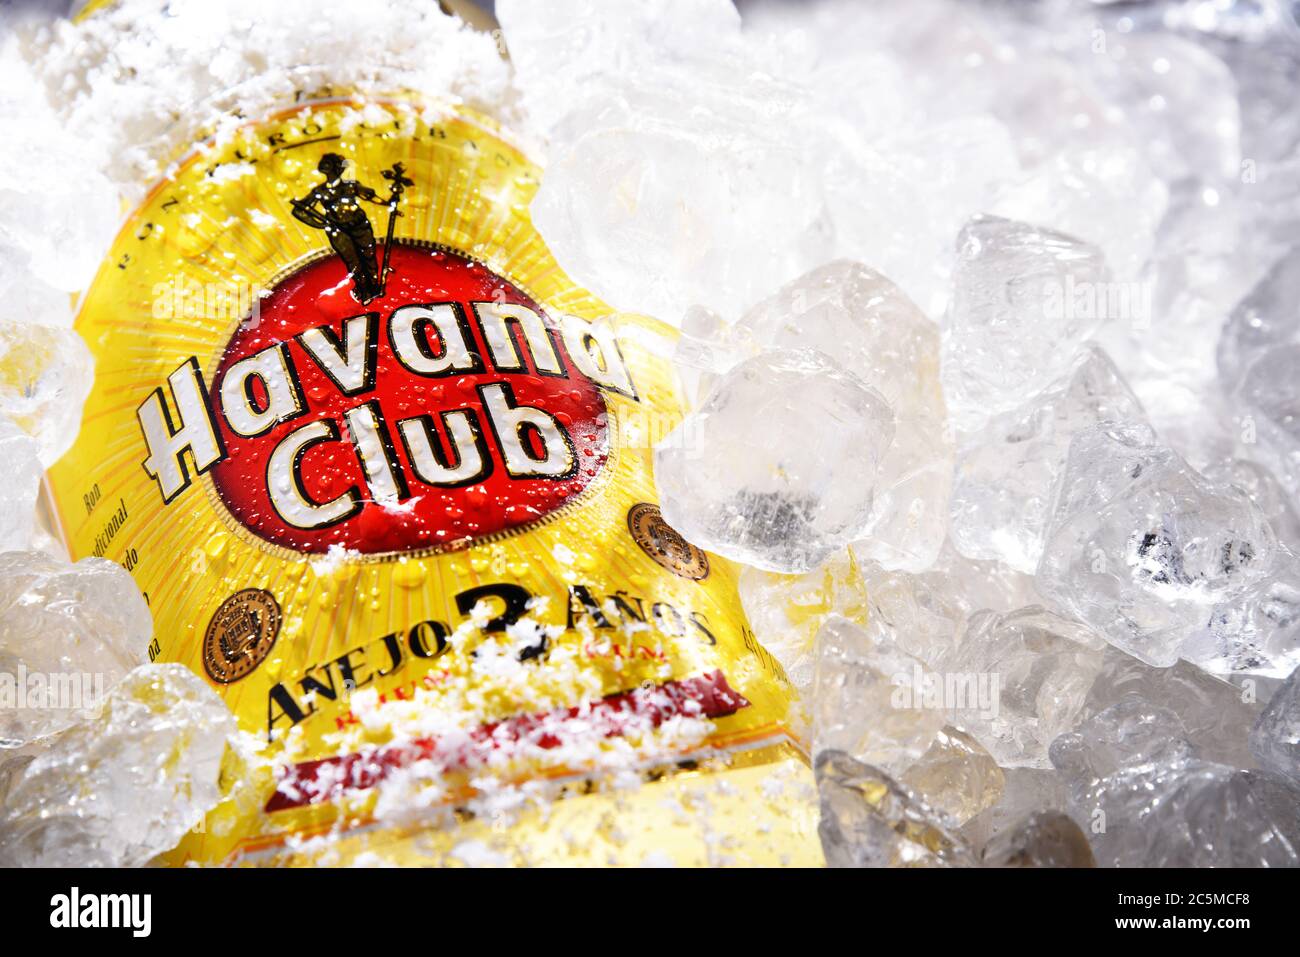 POSEN, POL - 28. MAI 2020: Flasche des Havana Club, eine 1934 in Kuba gegründete Marke für Rum, heute eine der meistverkauften Rum-Marken der Welt Stockfoto